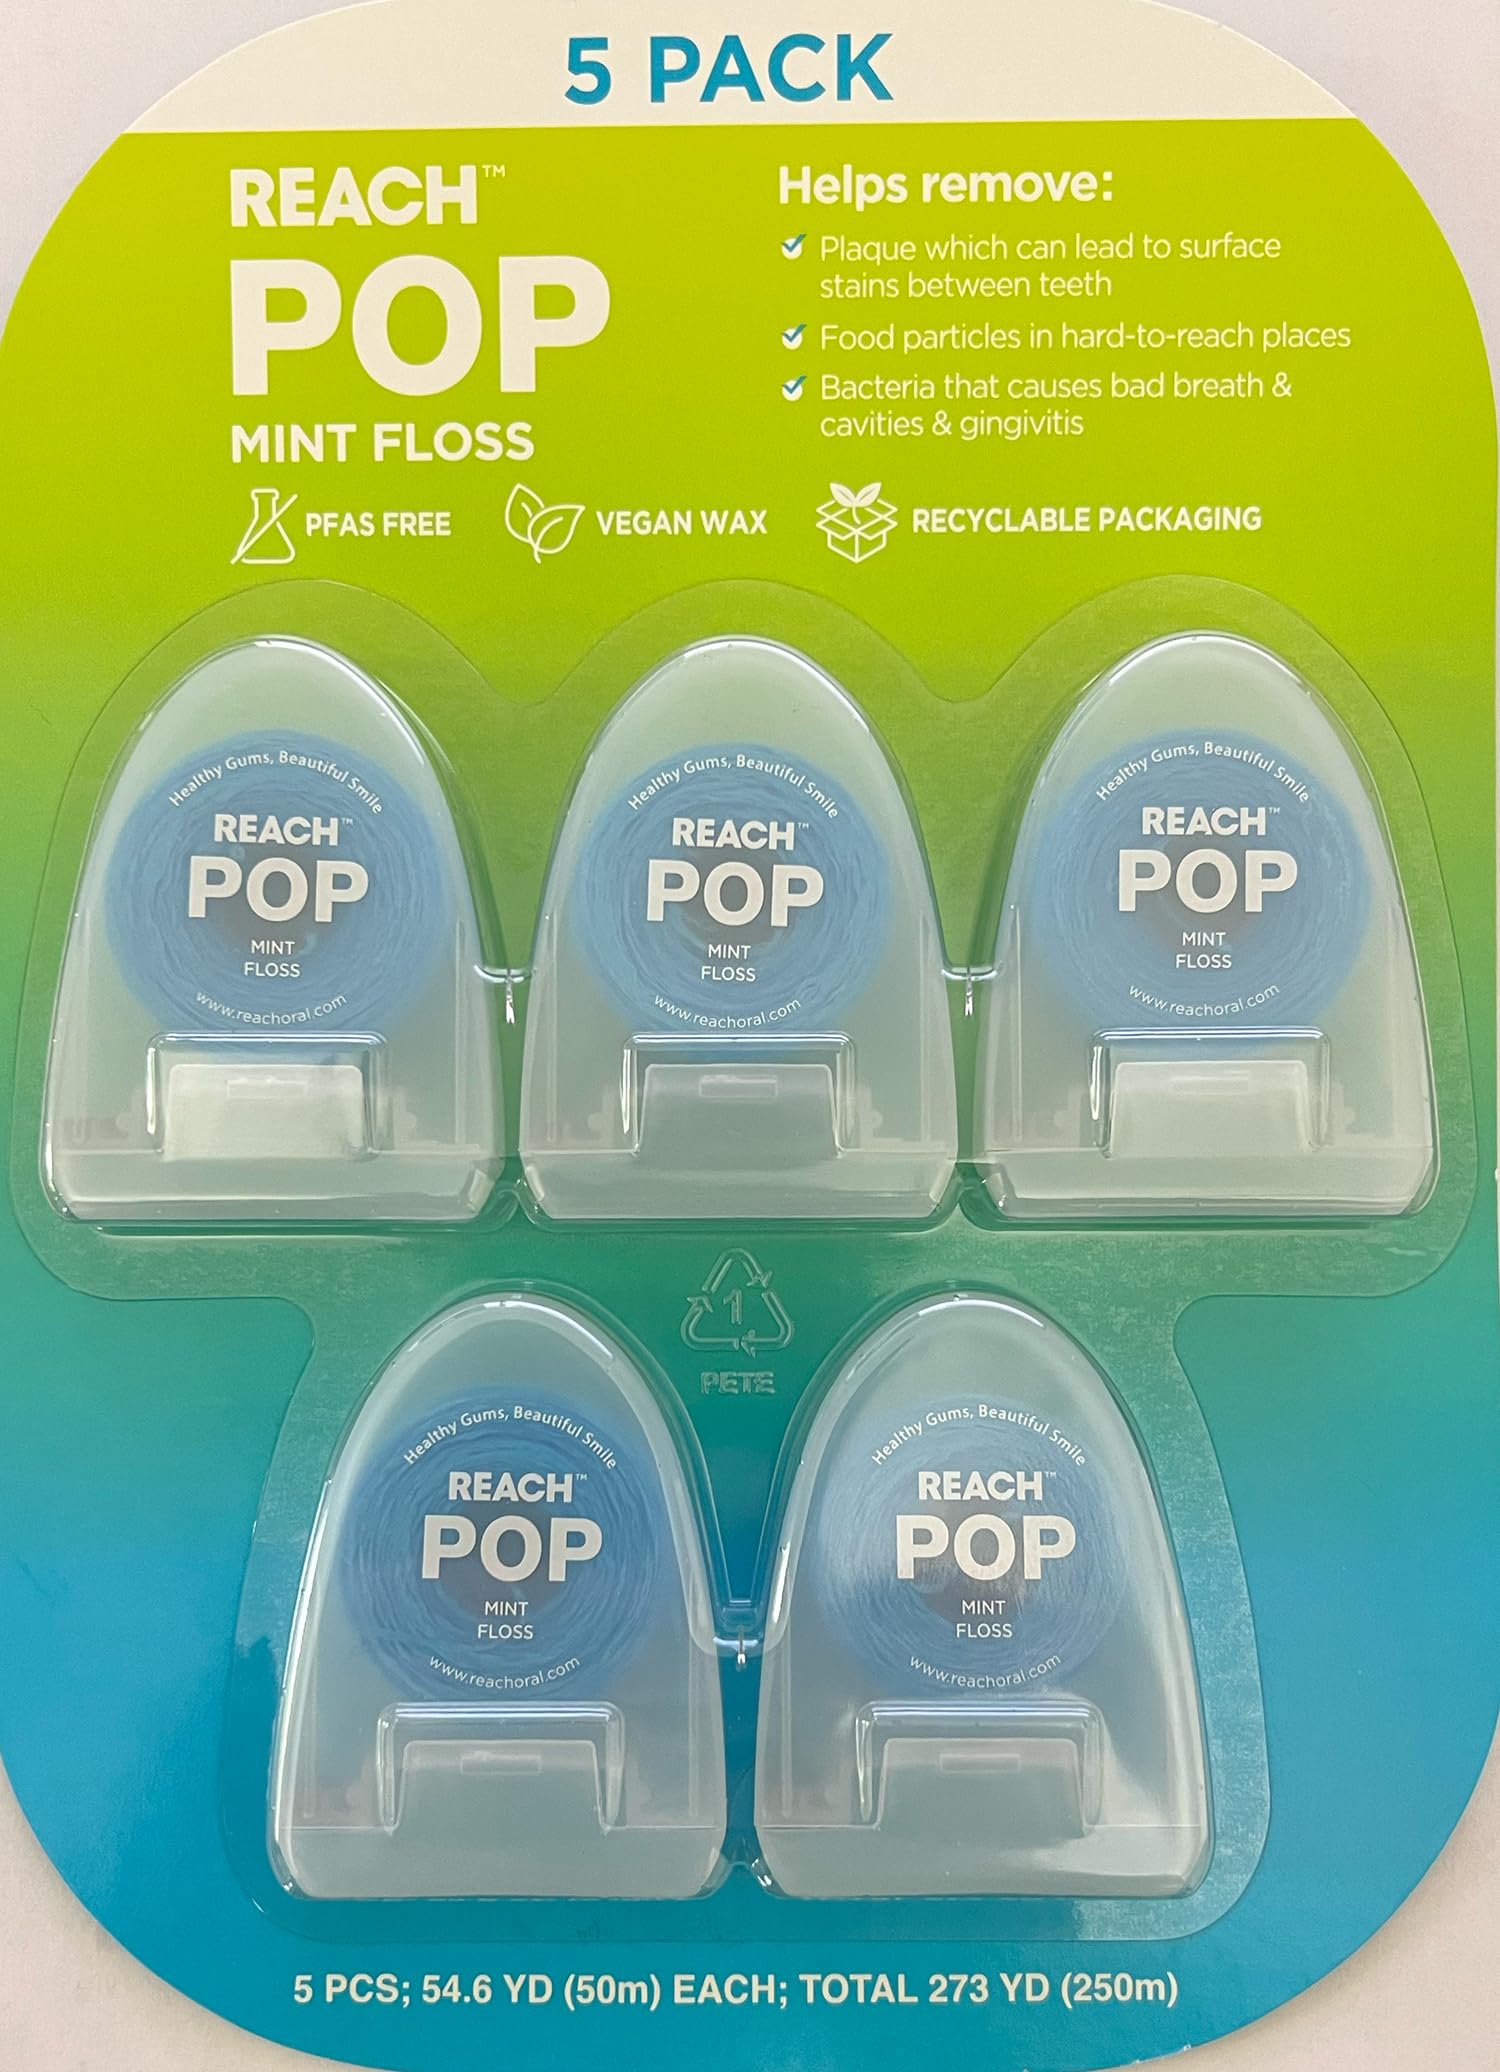 Reach POP Mint Floss (5 Pack).